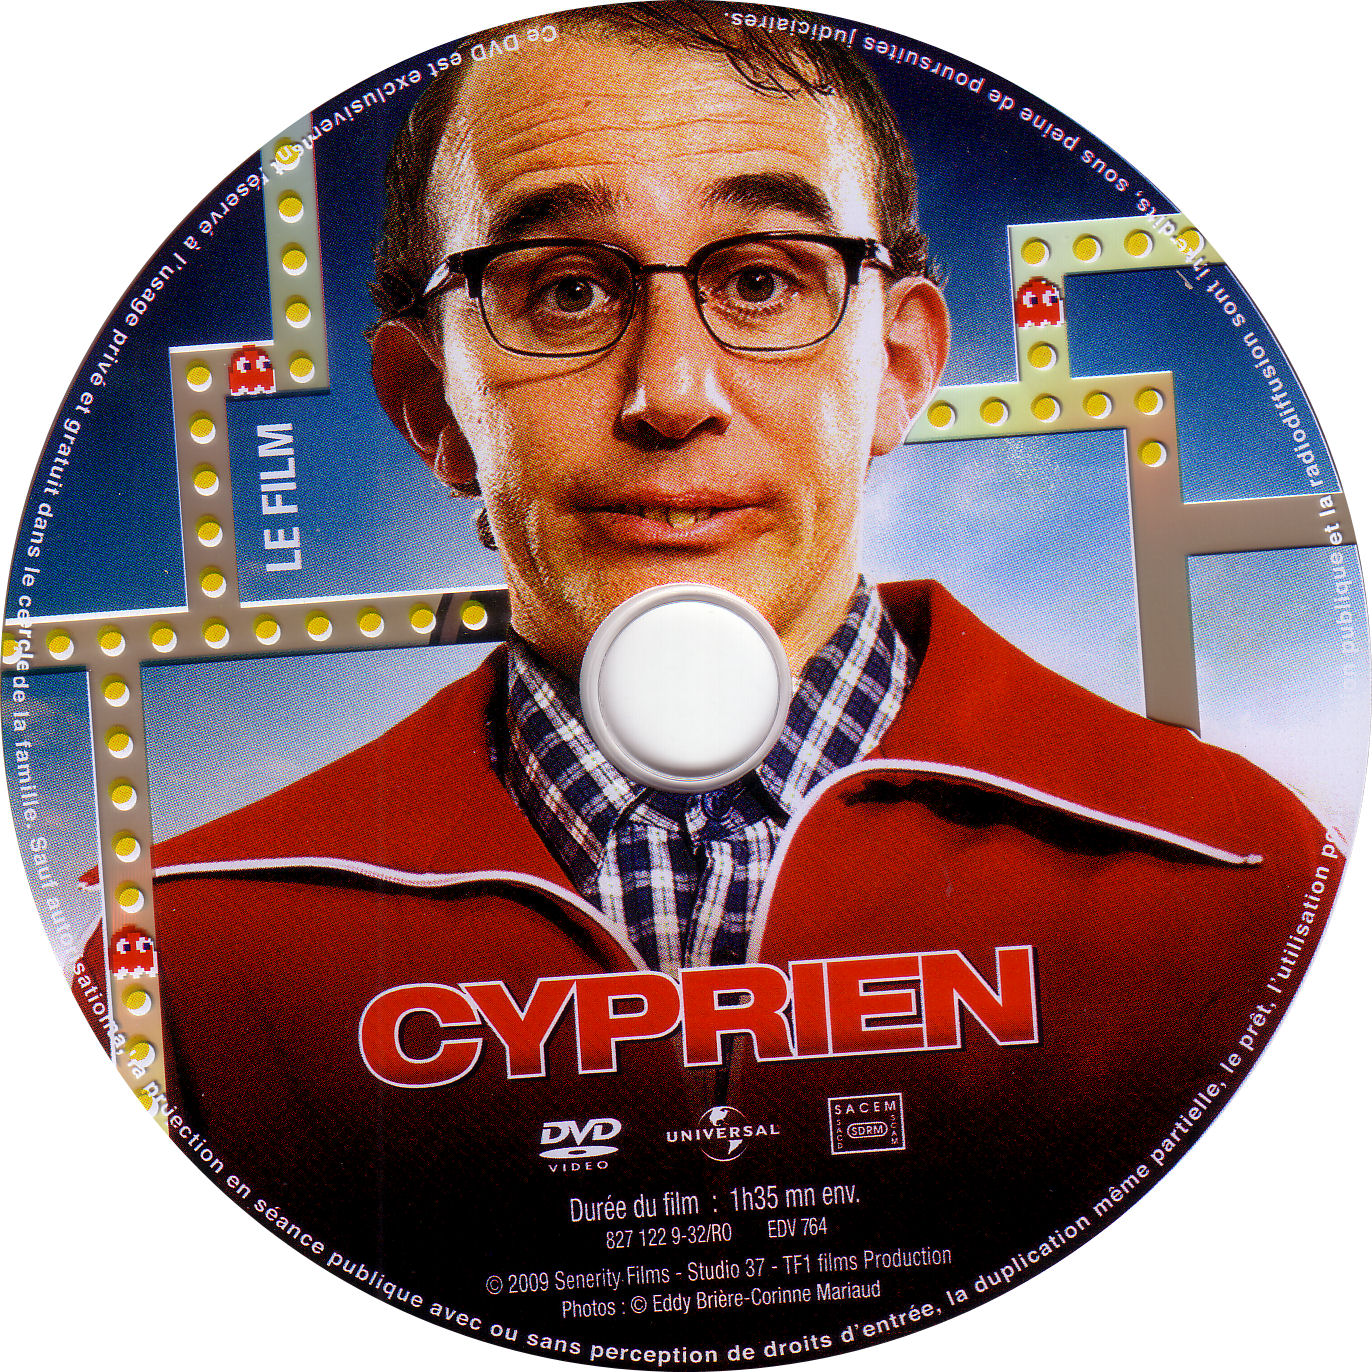 Sticker DVD de CYPRIEN - CinémaPassion